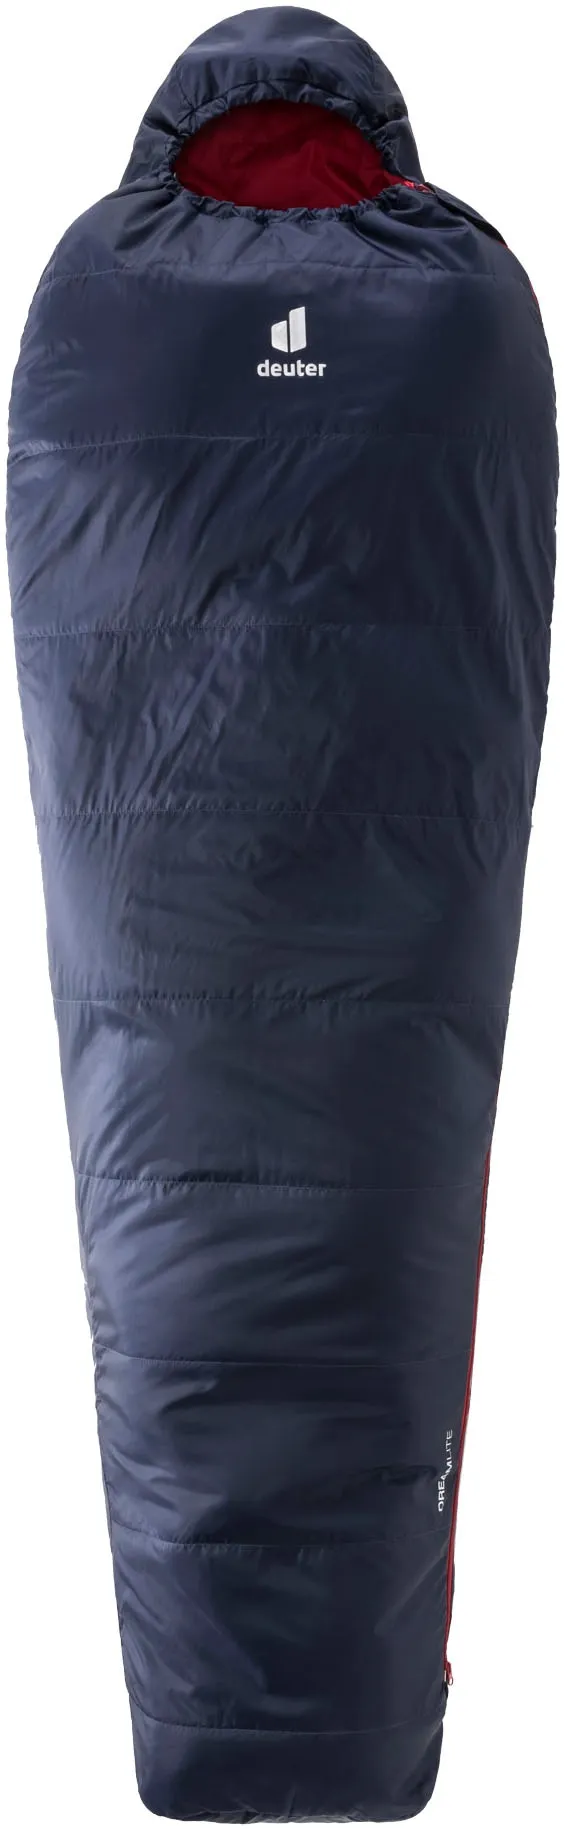 Trekkingschlafsack DEUTER "DREAMLITE" Schlafsäcke Gr. mit Reißverschluss, blau (navy) Schlafsäcke